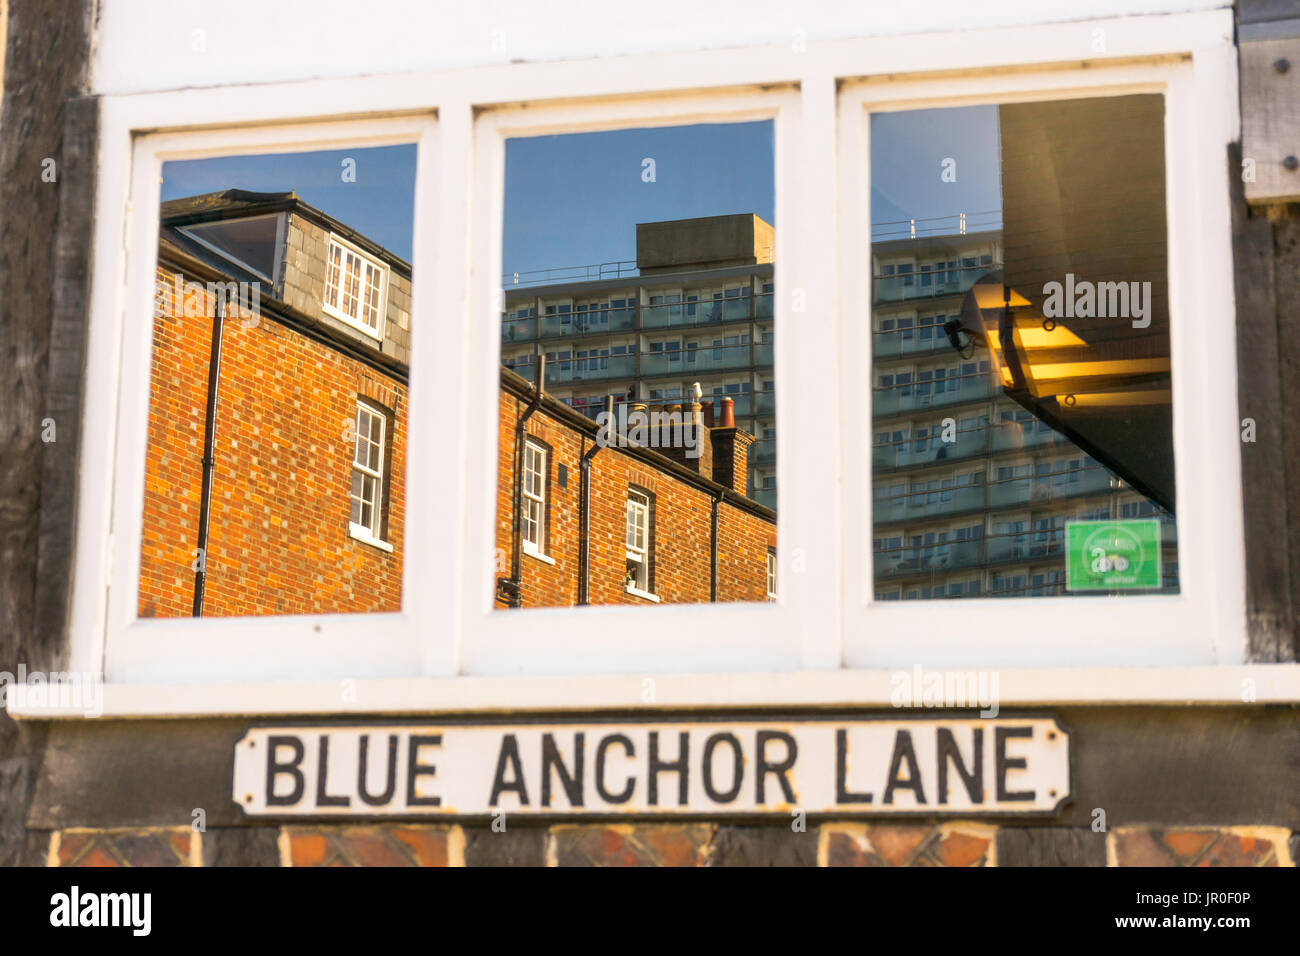 Blue Anchor Lane - Reflexión de edificios en una ventana de un edificio en el casco histórico de la ciudad de Southampton, Inglaterra, Reino Unido. Foto de stock